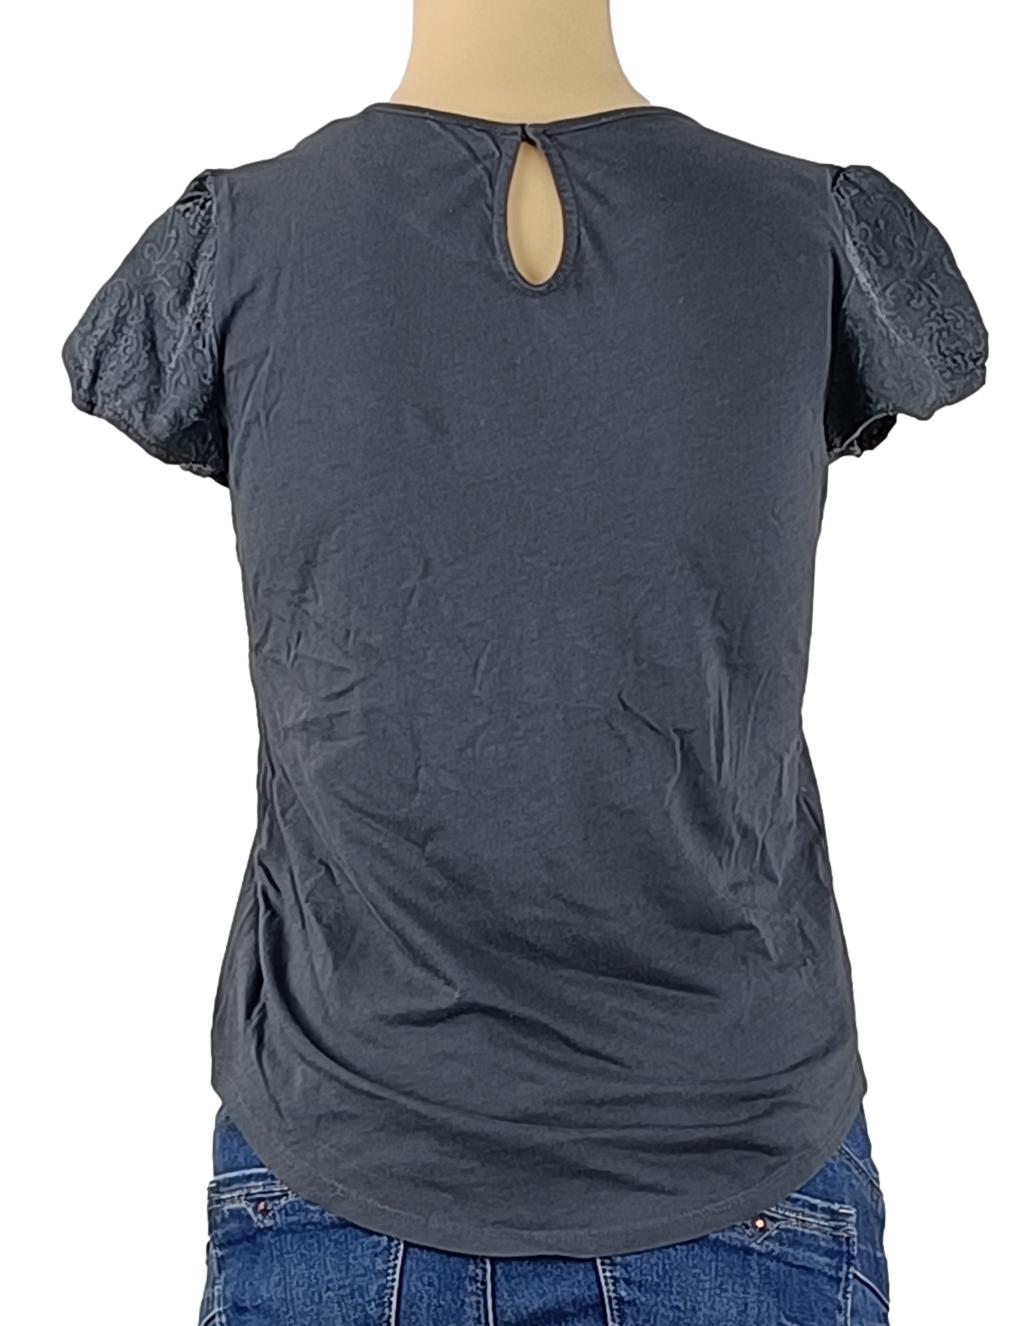 T-shirt Comptoir des cotonniers - Taille XS